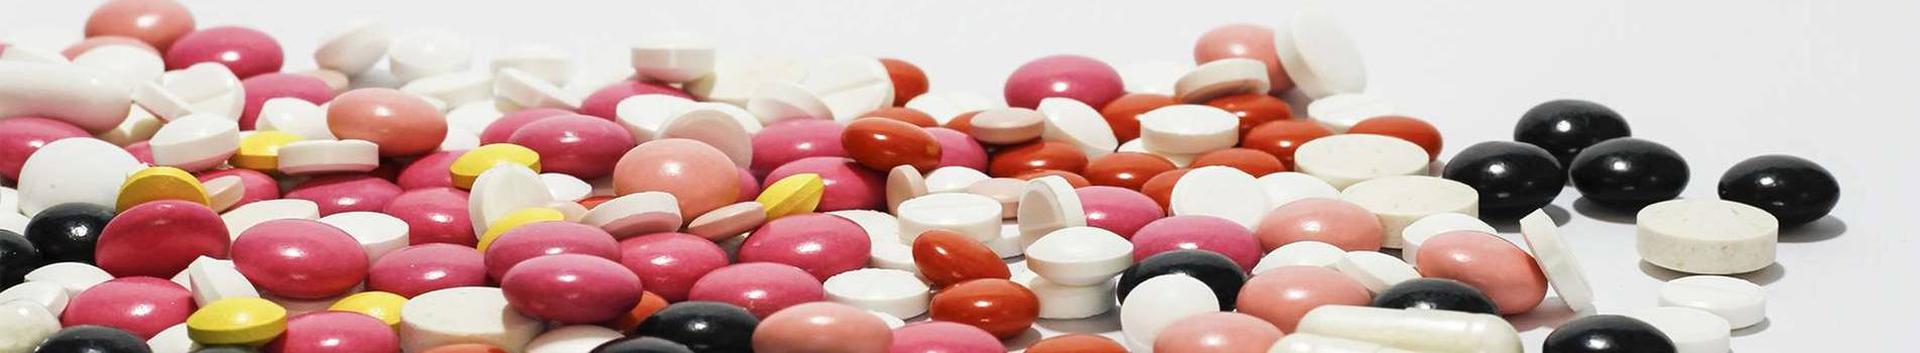 OÜ VIPIS Pharmaceutics 2022. aastal majandustegevust ei toimunud.